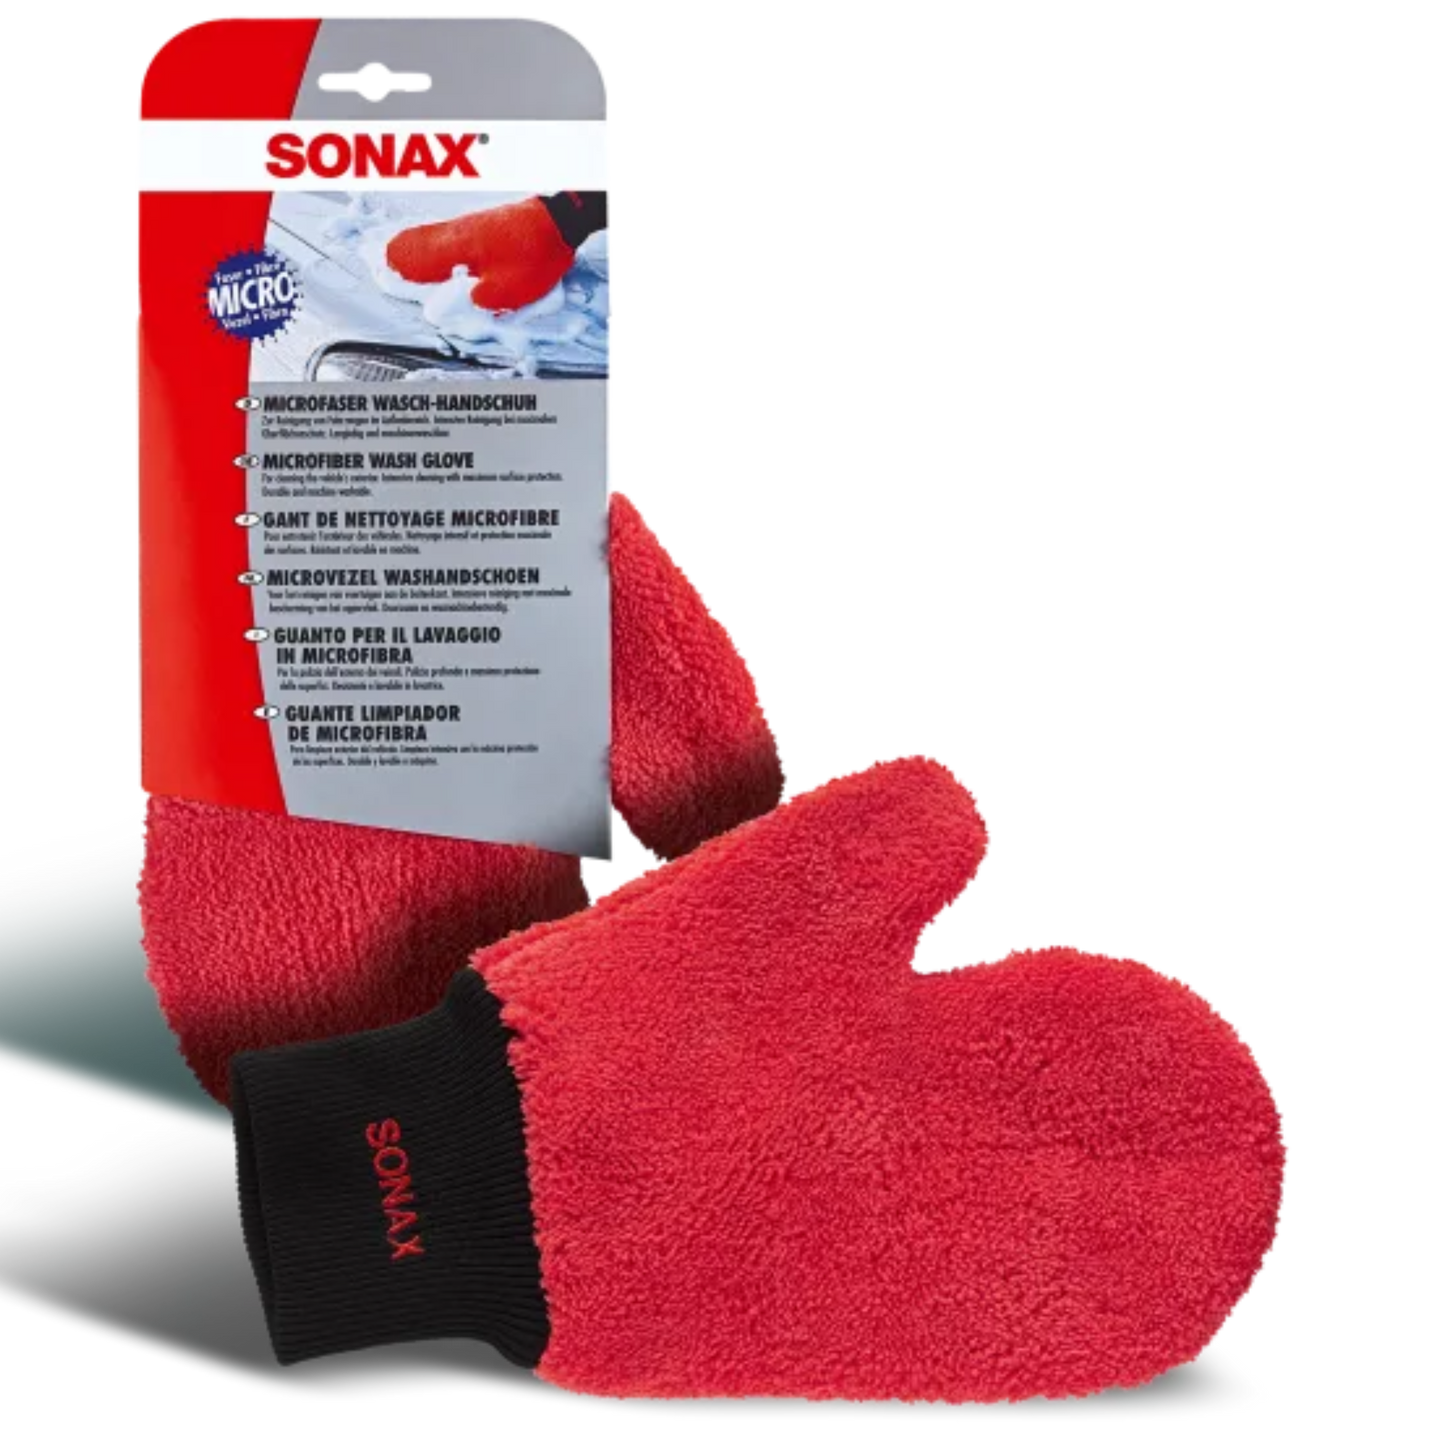 SONAX microfiber wash mitt